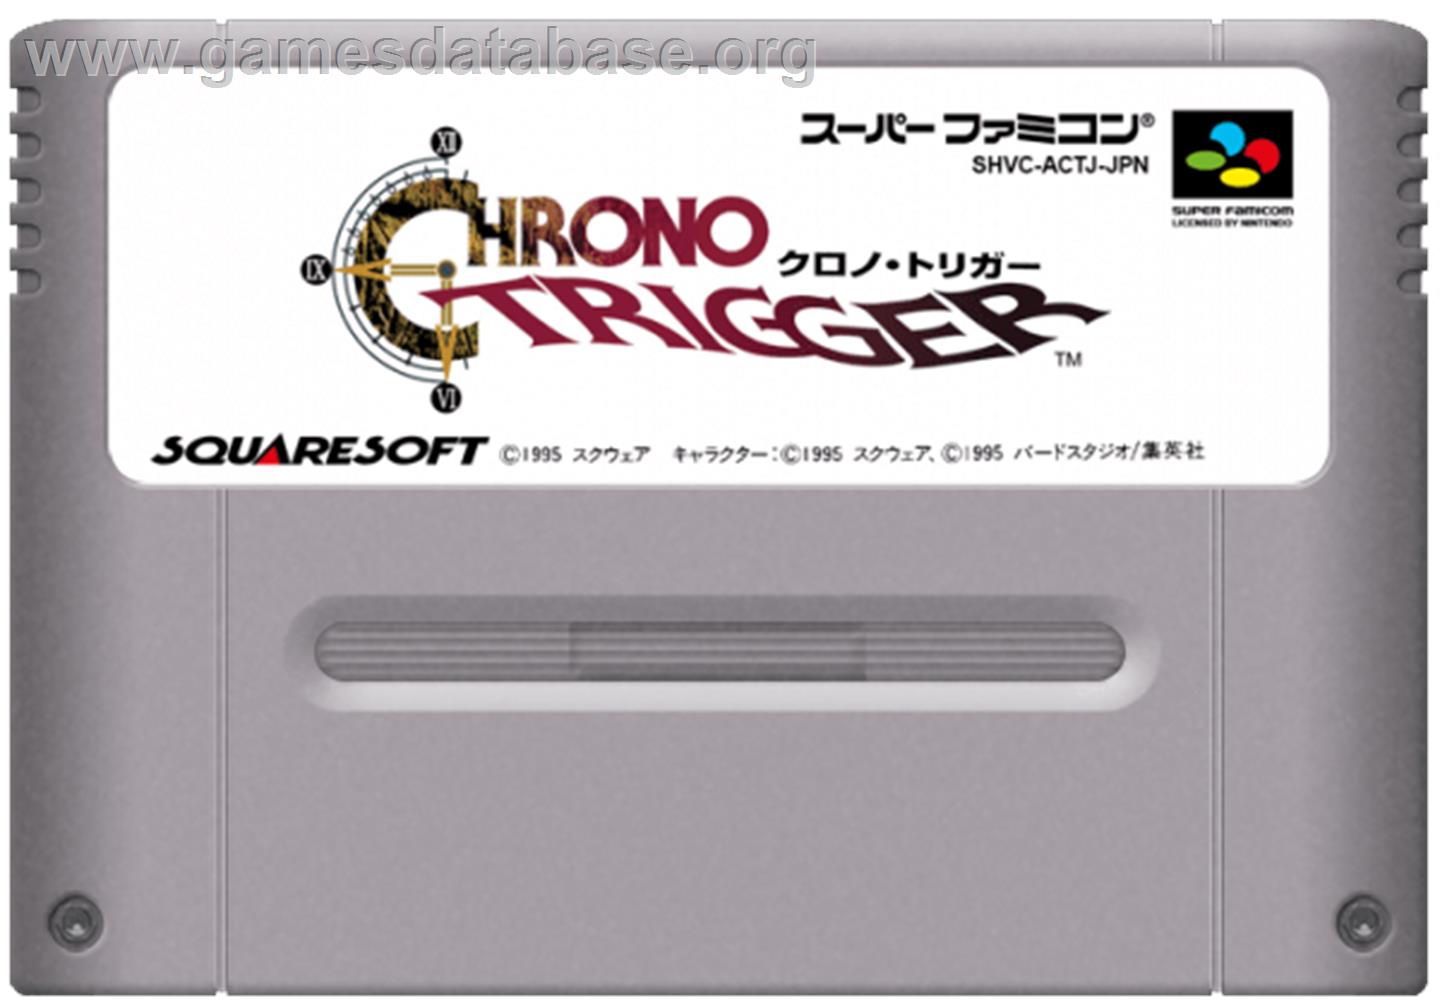 Chrono Trigger - Nintendo SNES - Artwork - Cartridge